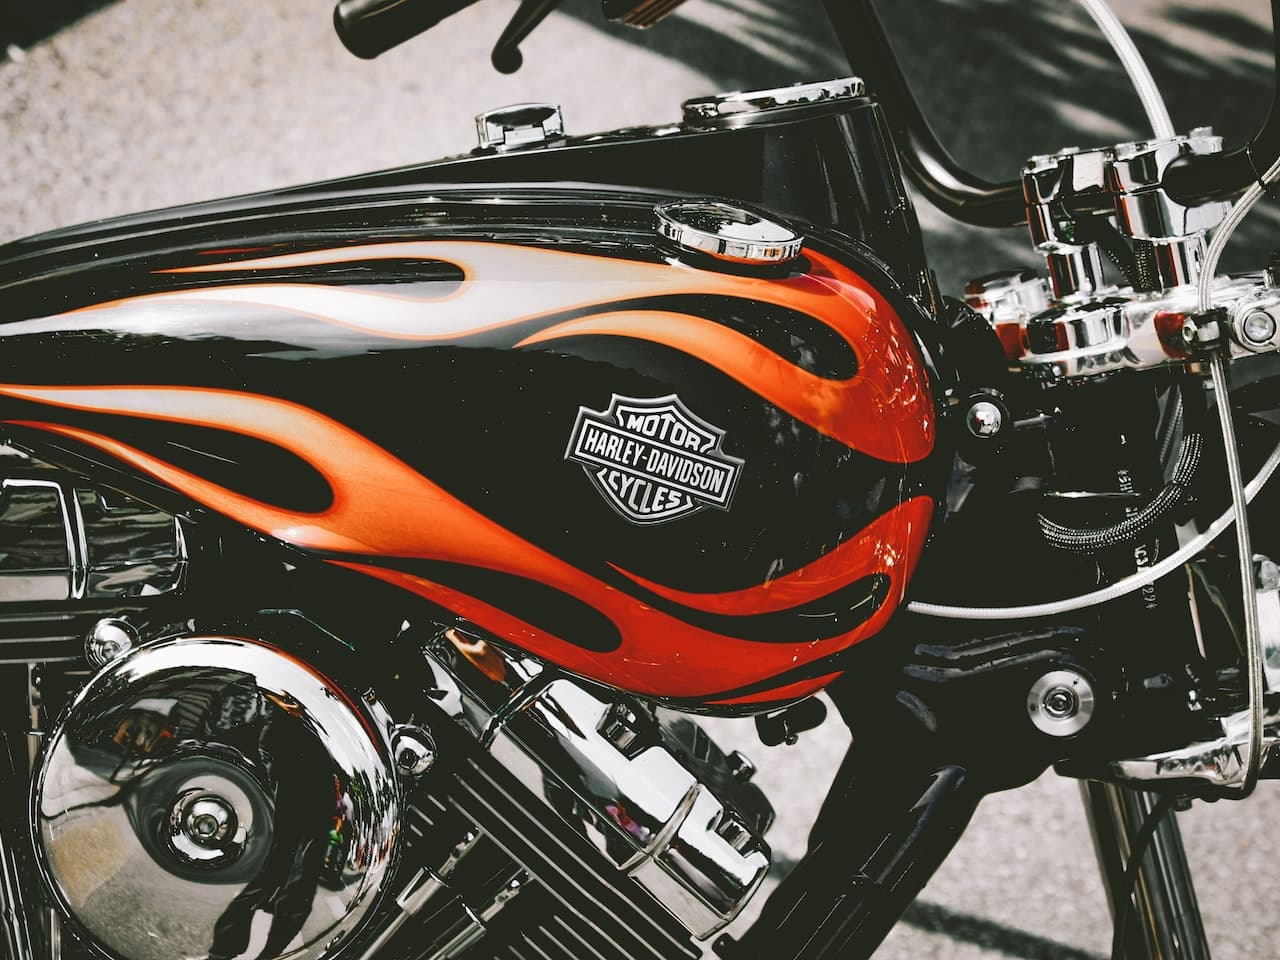 Revving Harley Davidson's Image | Simplisk